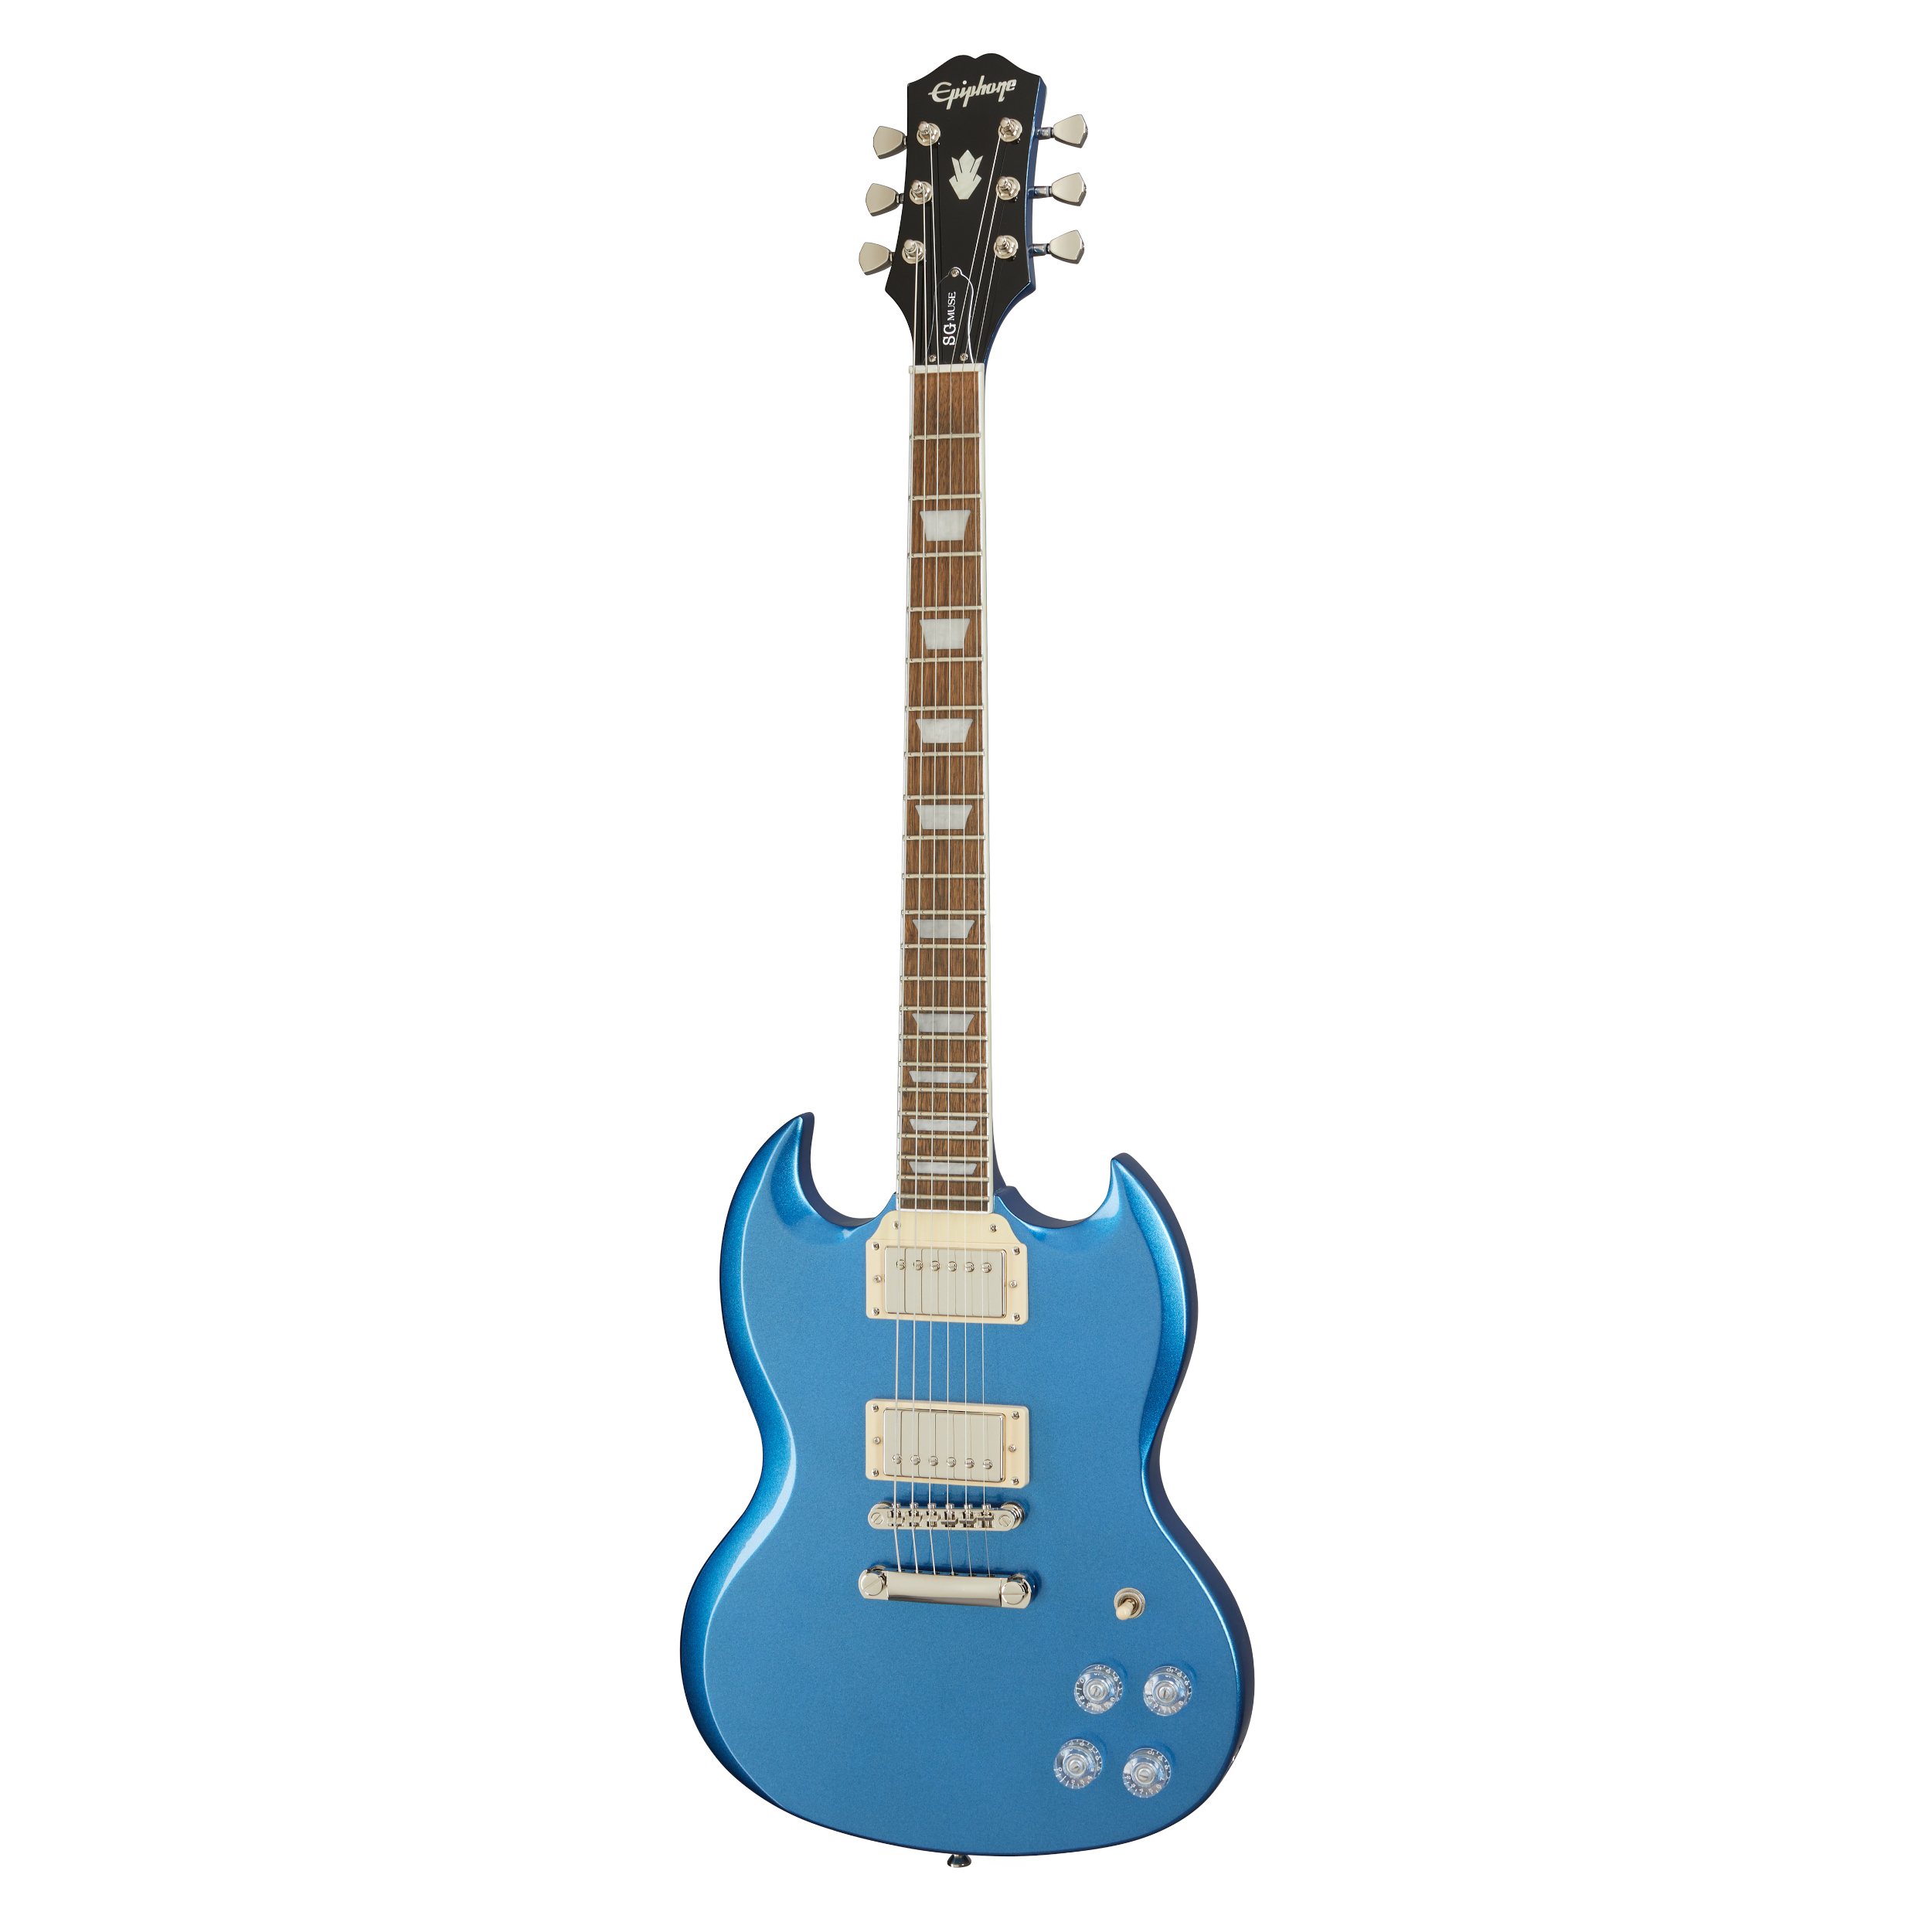 Epiphone SG Muse - Radio Blue Metallic Guitar